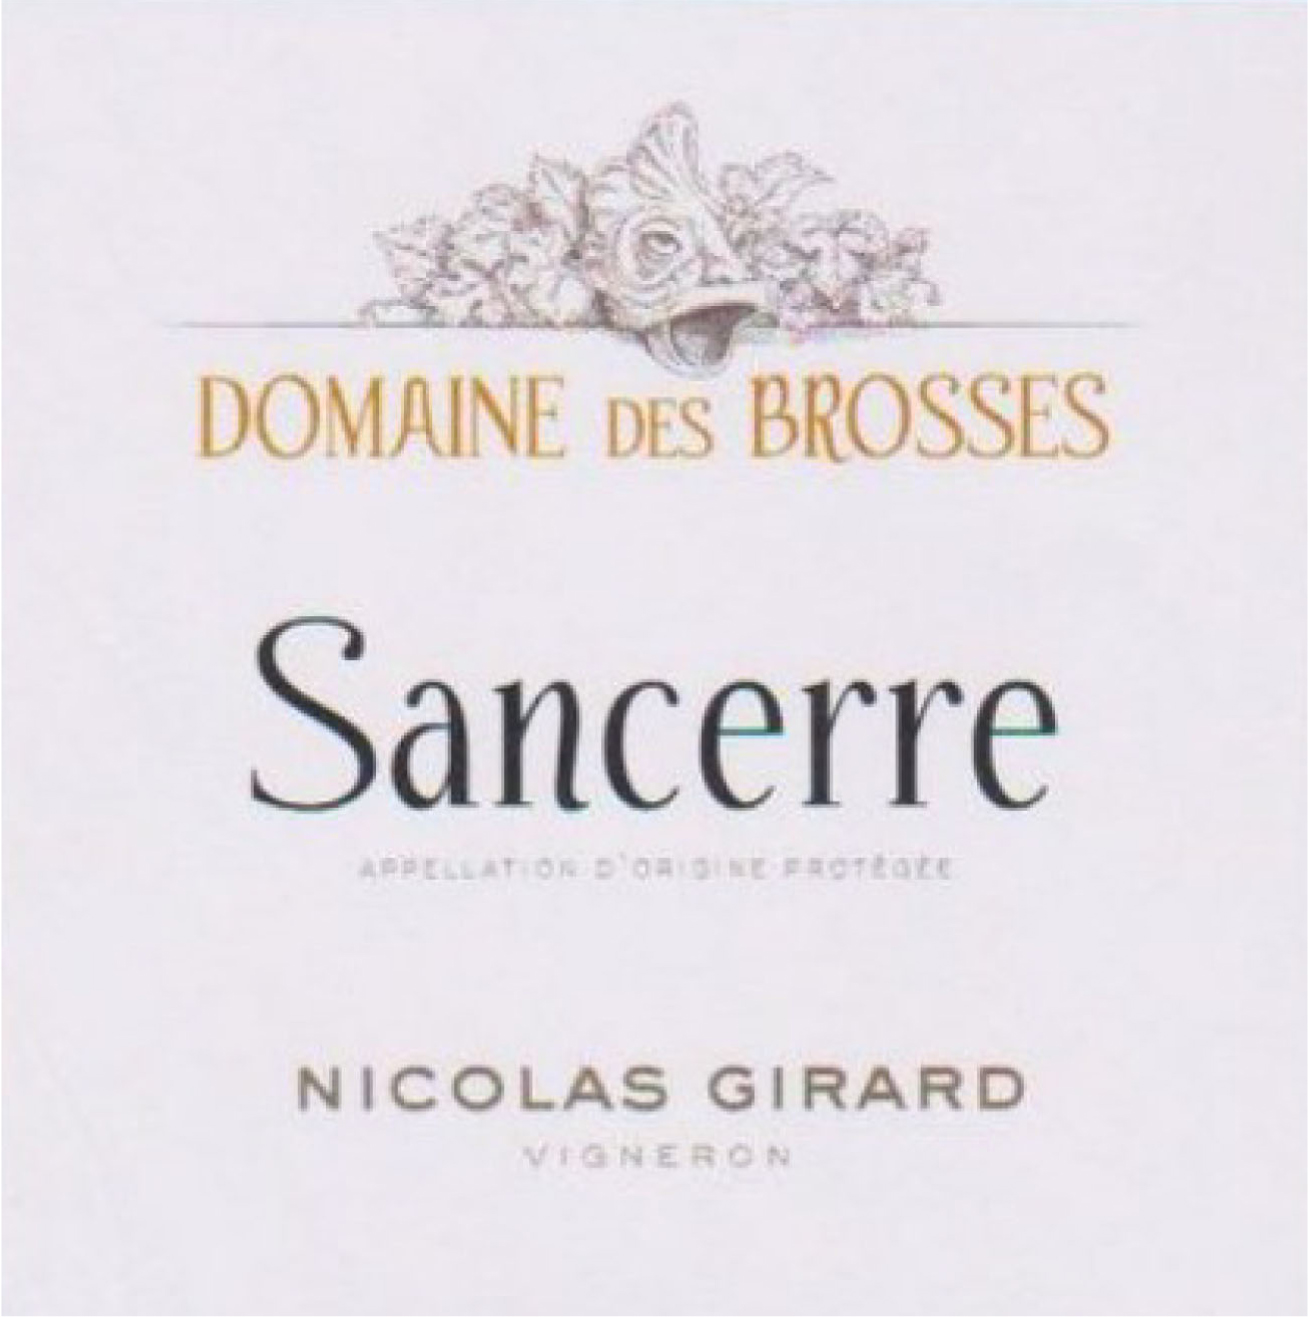 Domaine des Brosses - Sancerre label